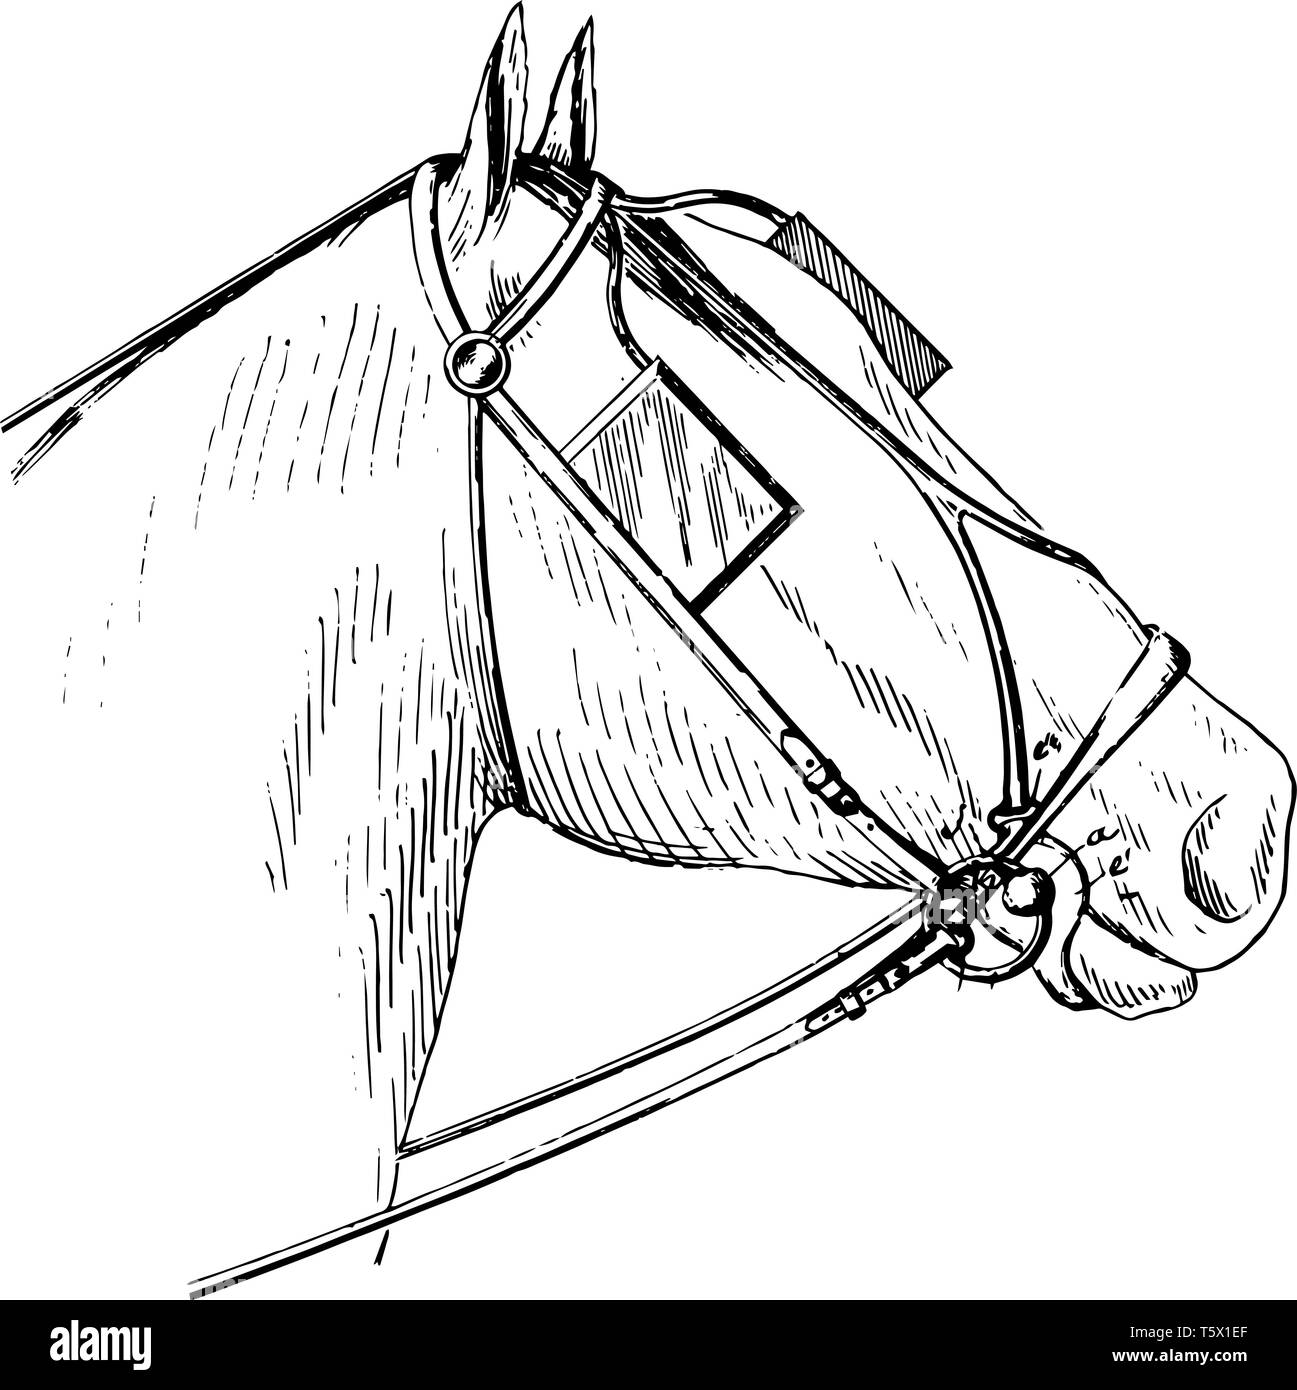 Questa immagine rappresenta briglia bit che viene usato per dirigere un cavallo, vintage disegno della linea di incisione o illustrazione. Illustrazione Vettoriale